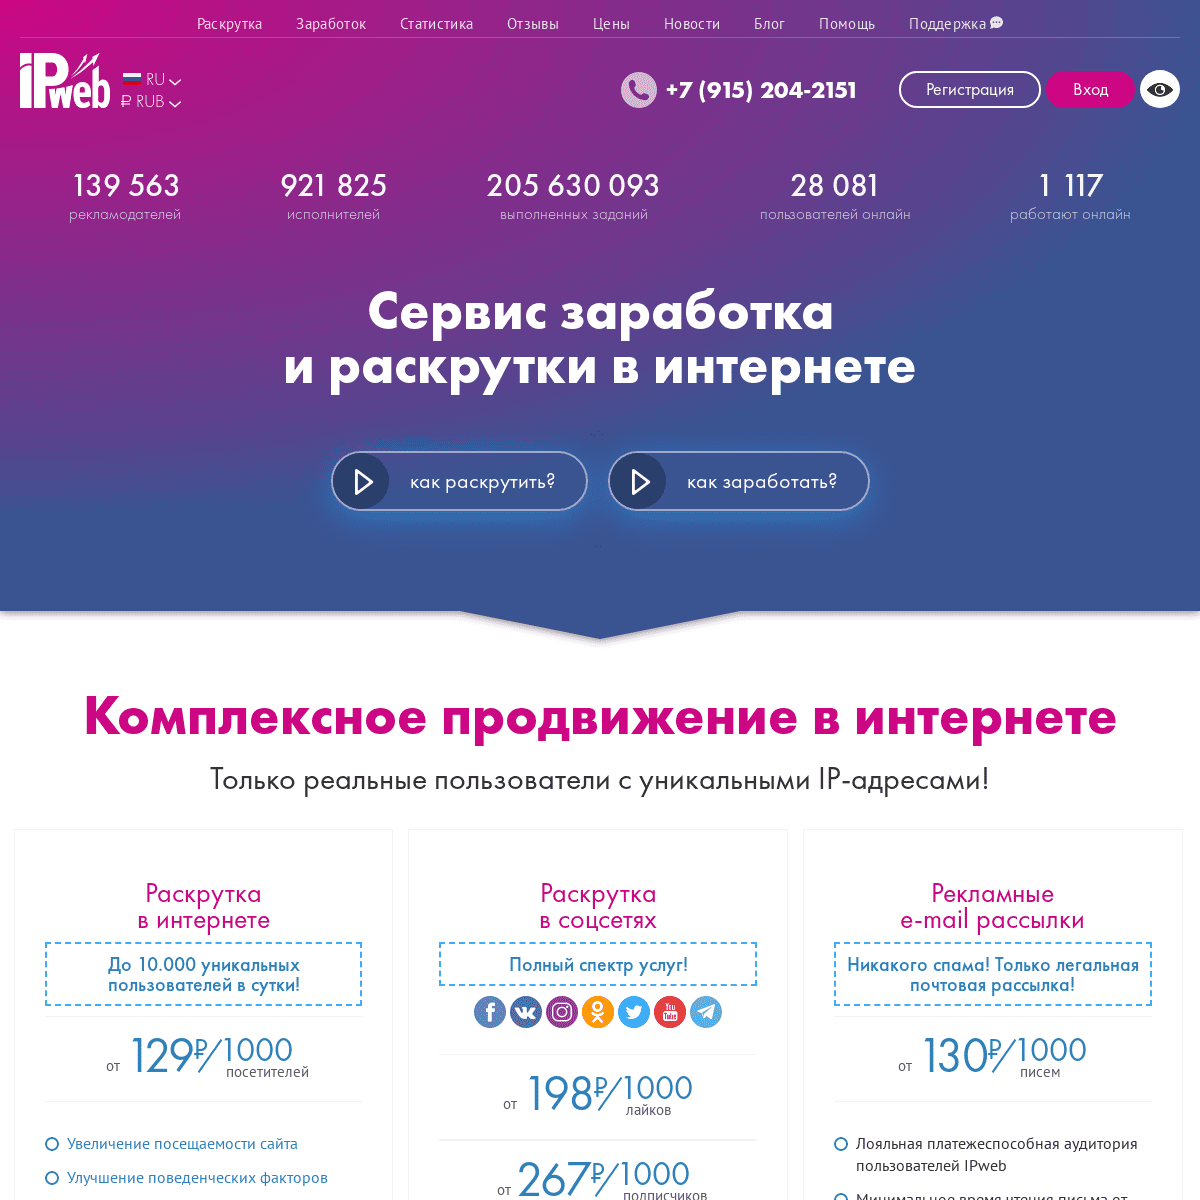 A complete backup of https://ipweb.ru